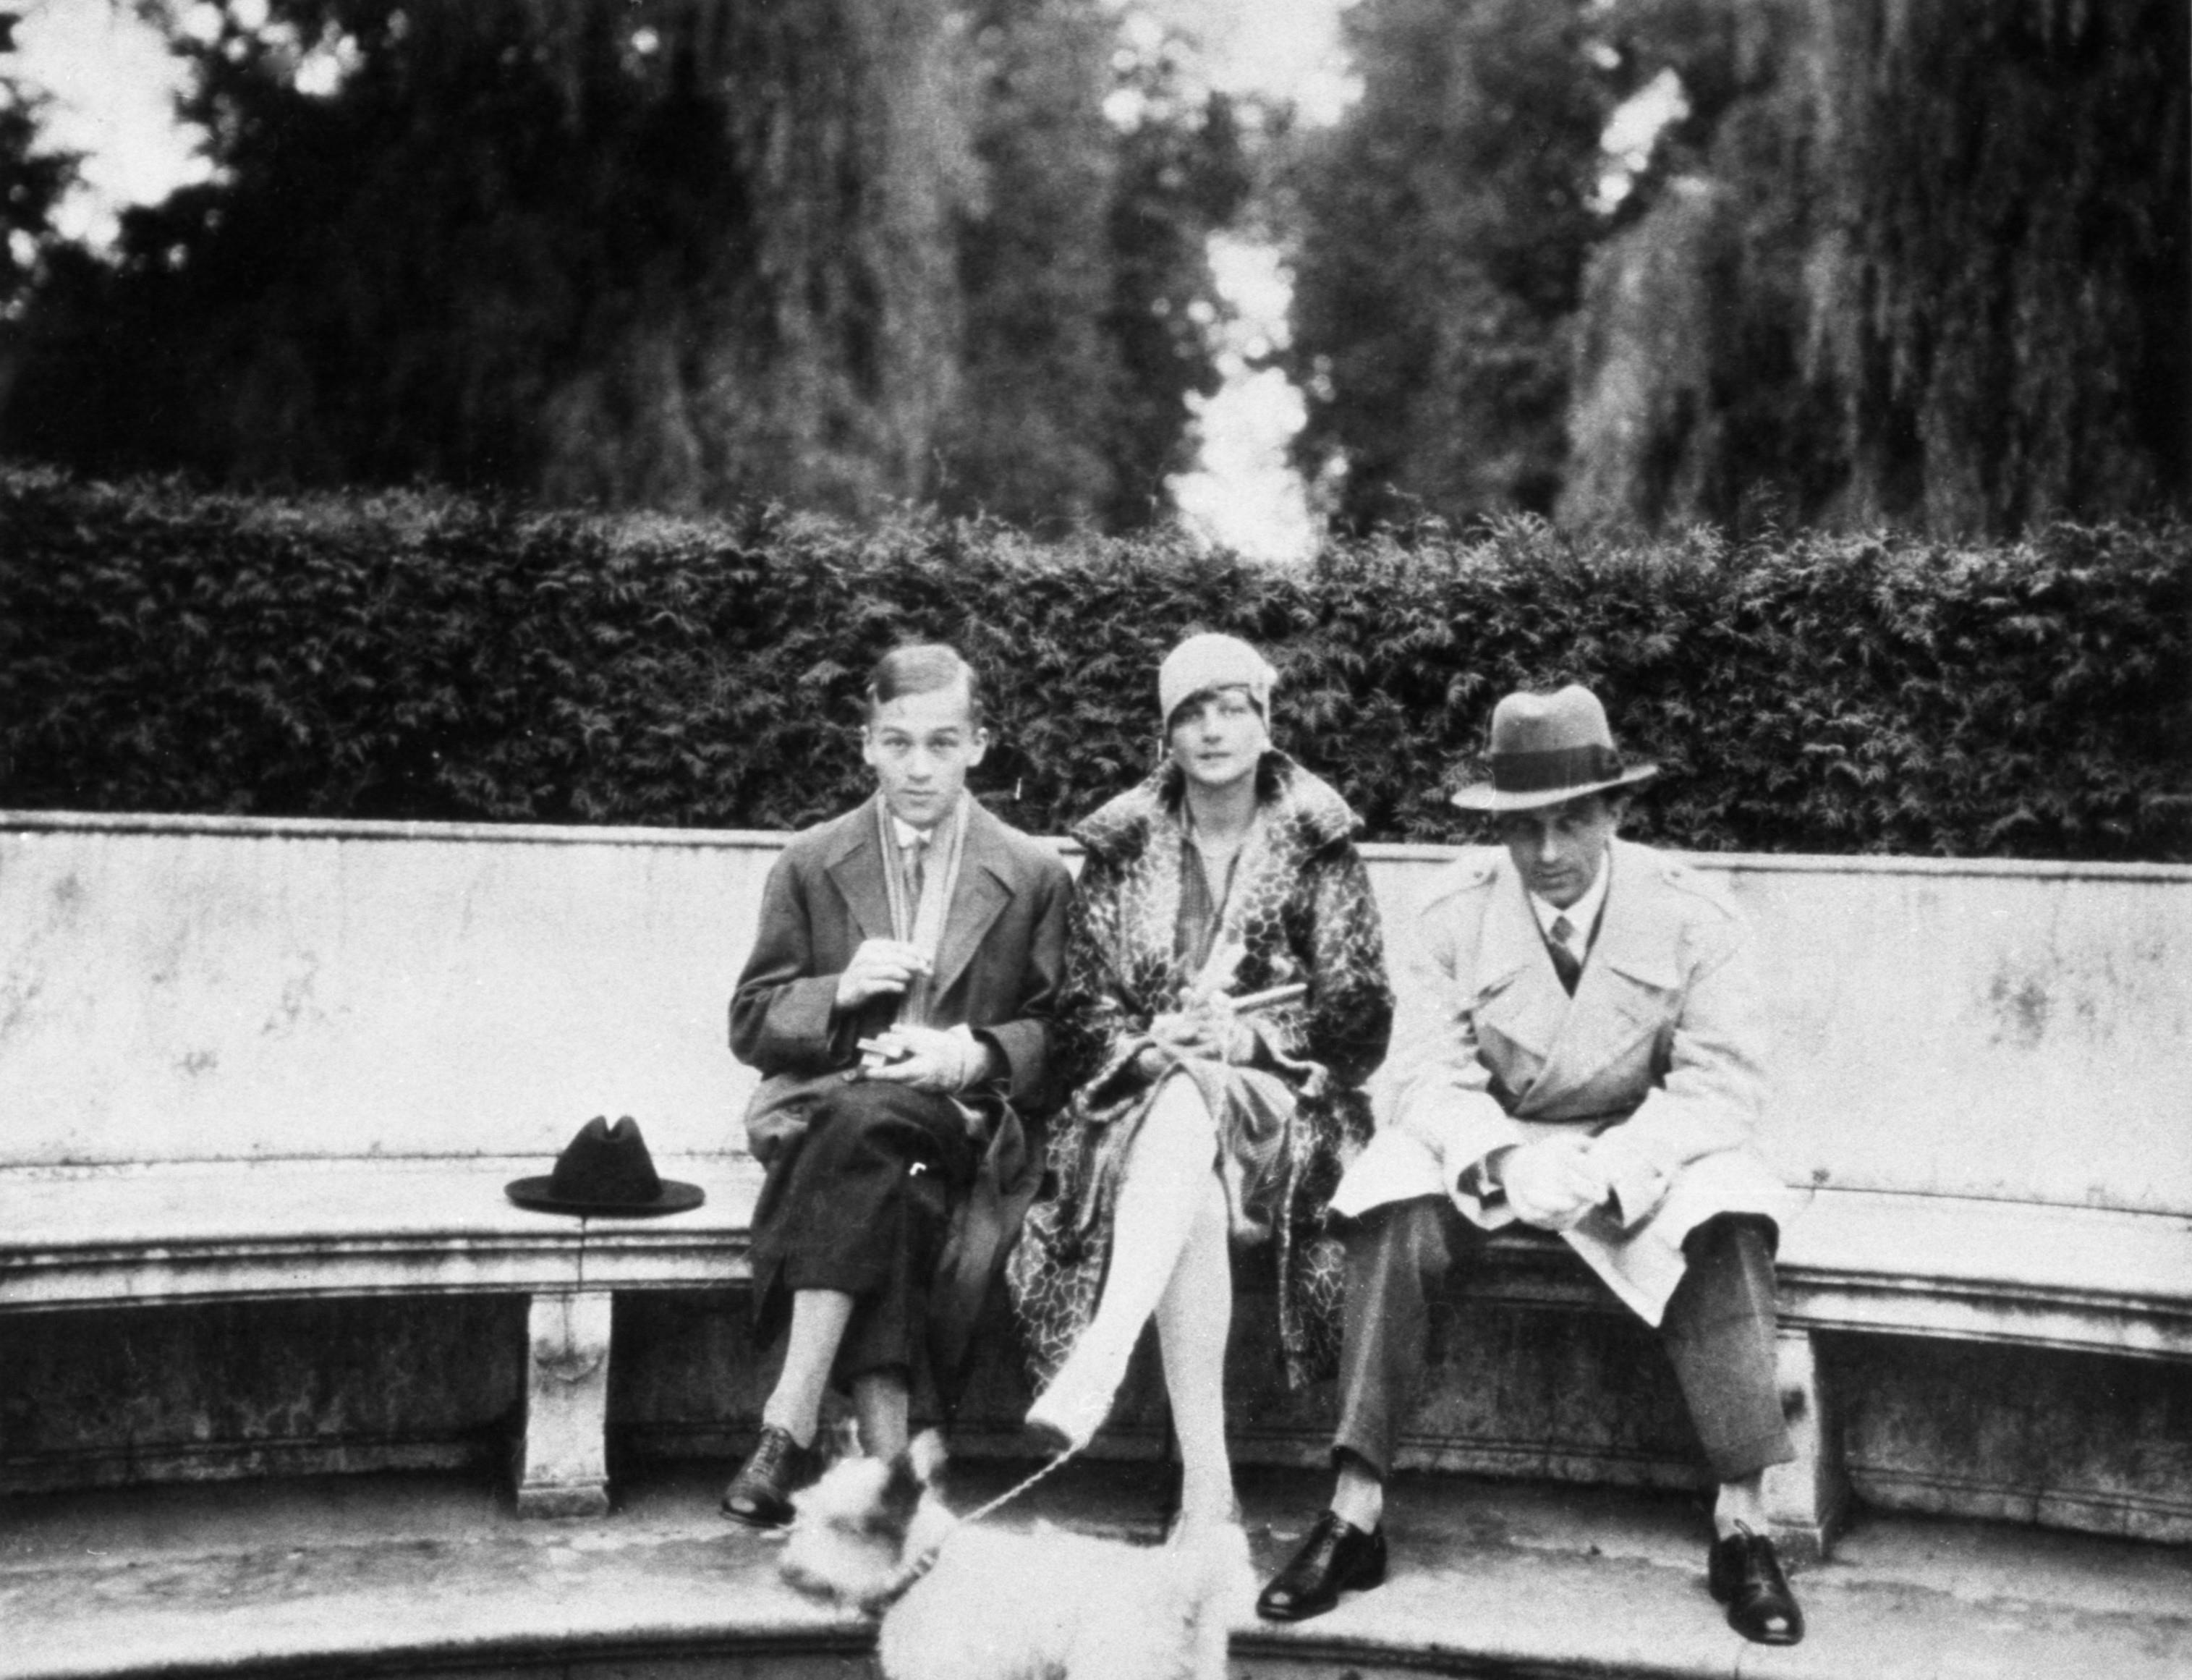 Agent polskiego wywiadu Jerzy Sosnowski (z prawej) mimo wątpliwych dowodów został skazany za współpracę z Niemcami, Berlin, lata 20. XX w.